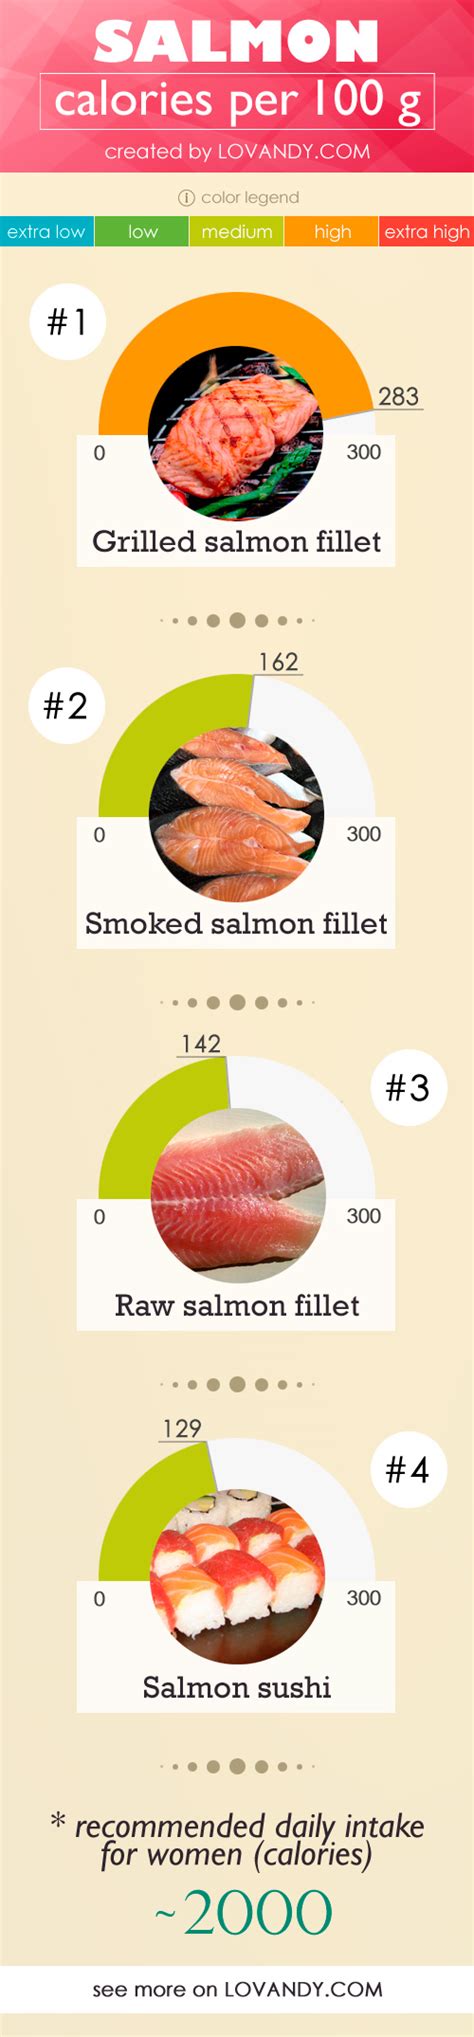 Protein Salmon 100g - Salmon Information Fish